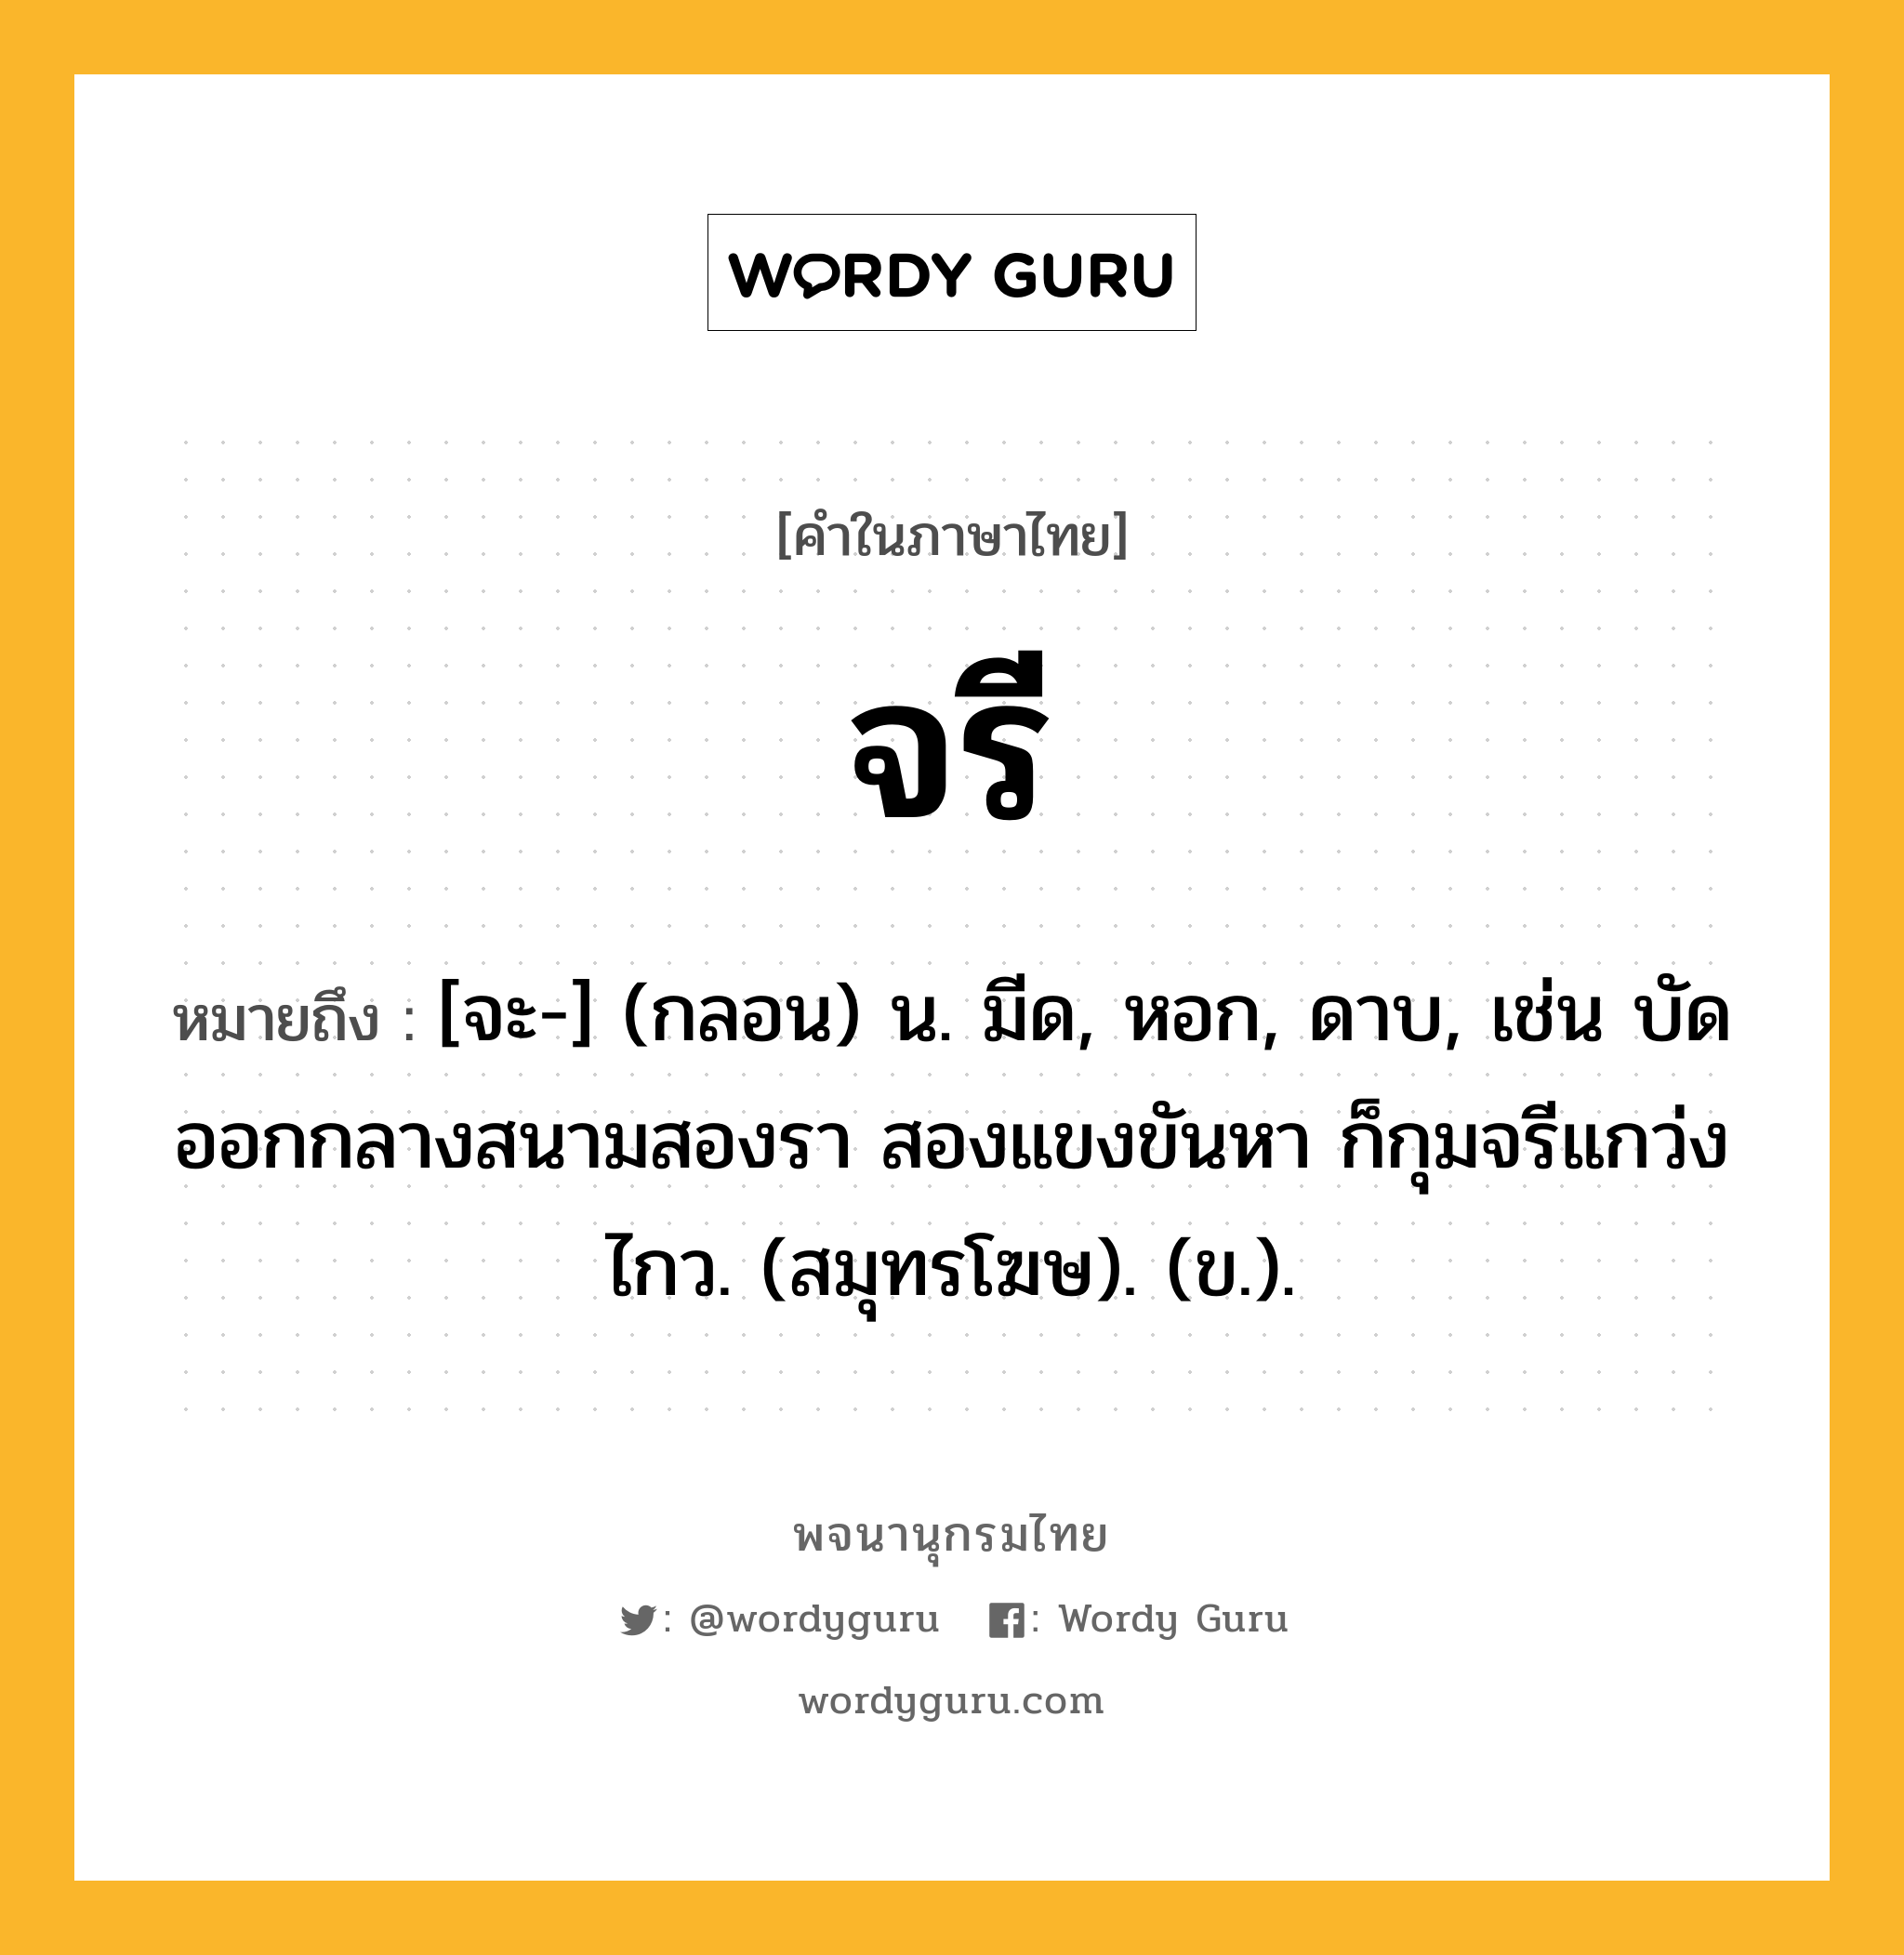 จรี หมายถึงอะไร?, คำในภาษาไทย จรี หมายถึง [จะ-] (กลอน) น. มีด, หอก, ดาบ, เช่น บัดออกกลางสนามสองรา สองแขงขันหา ก็กุมจรีแกว่งไกว. (สมุทรโฆษ). (ข.).